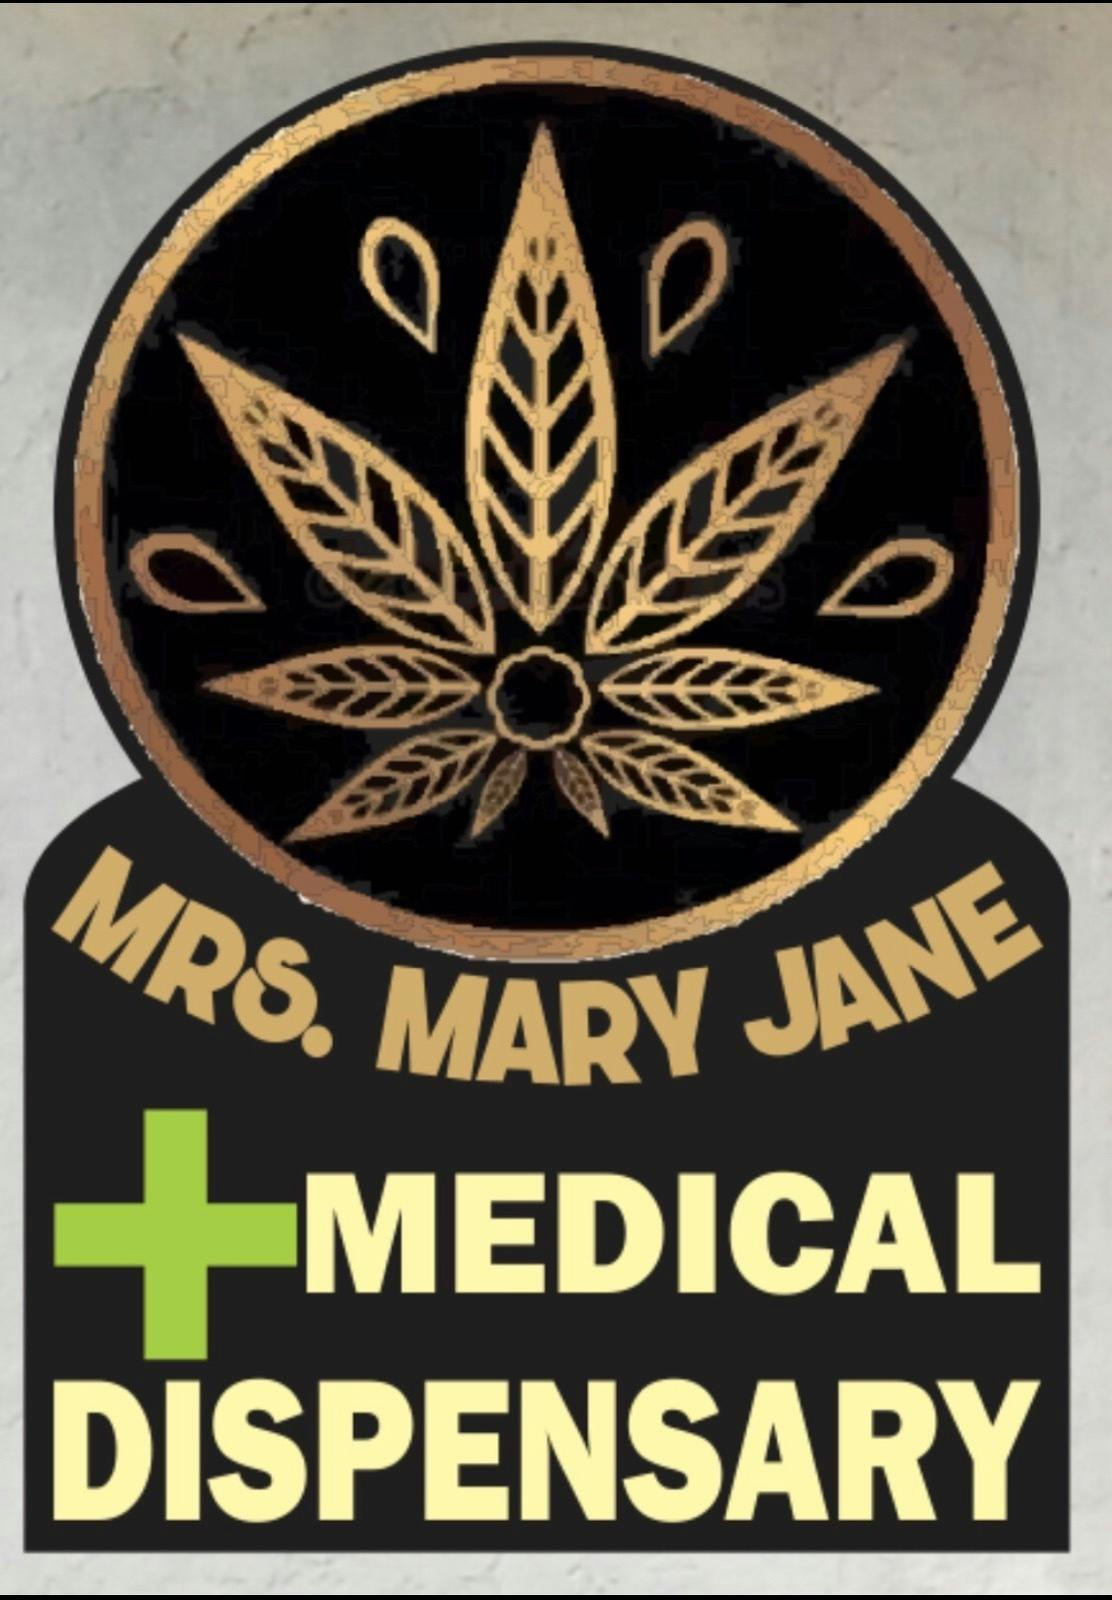 Mrs. Mary Jane ( Cannabis Dispensary) logo